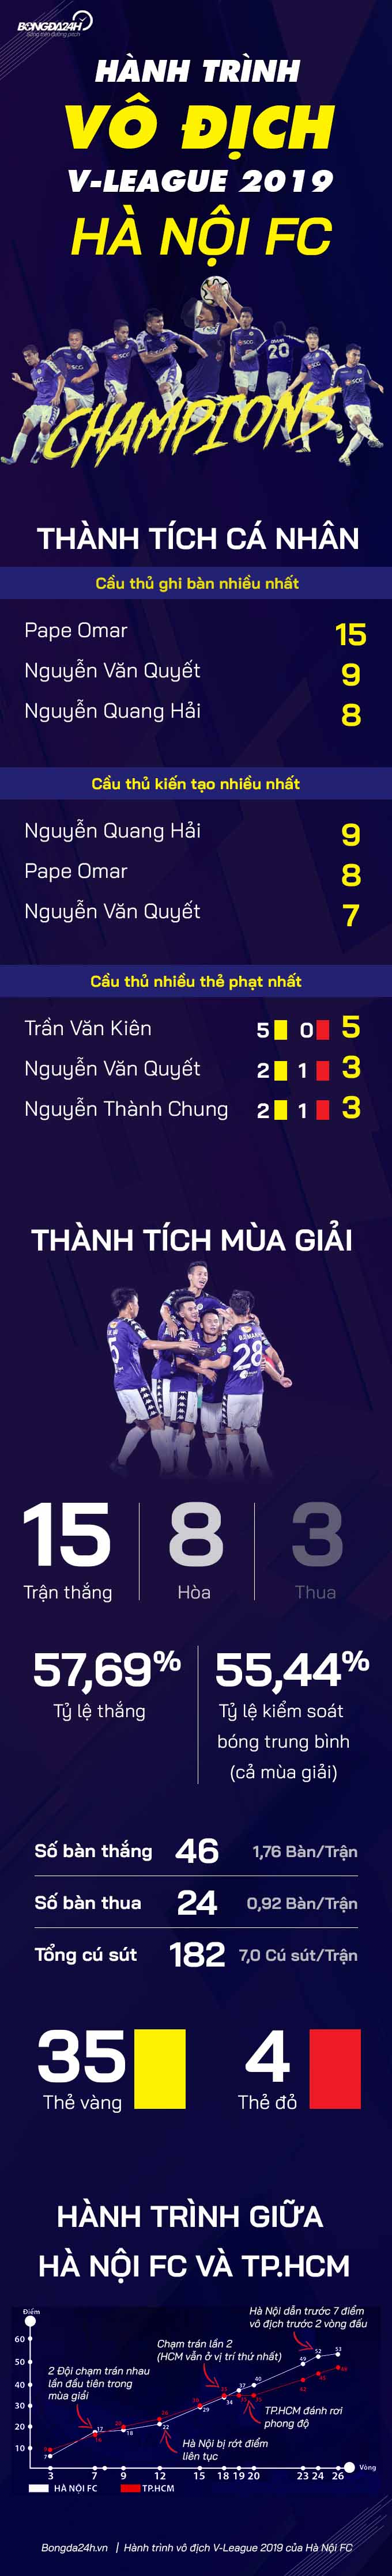 Infographic Hà Nội FC vô địch V-League 2019 - Một chặng đường! hình ảnh